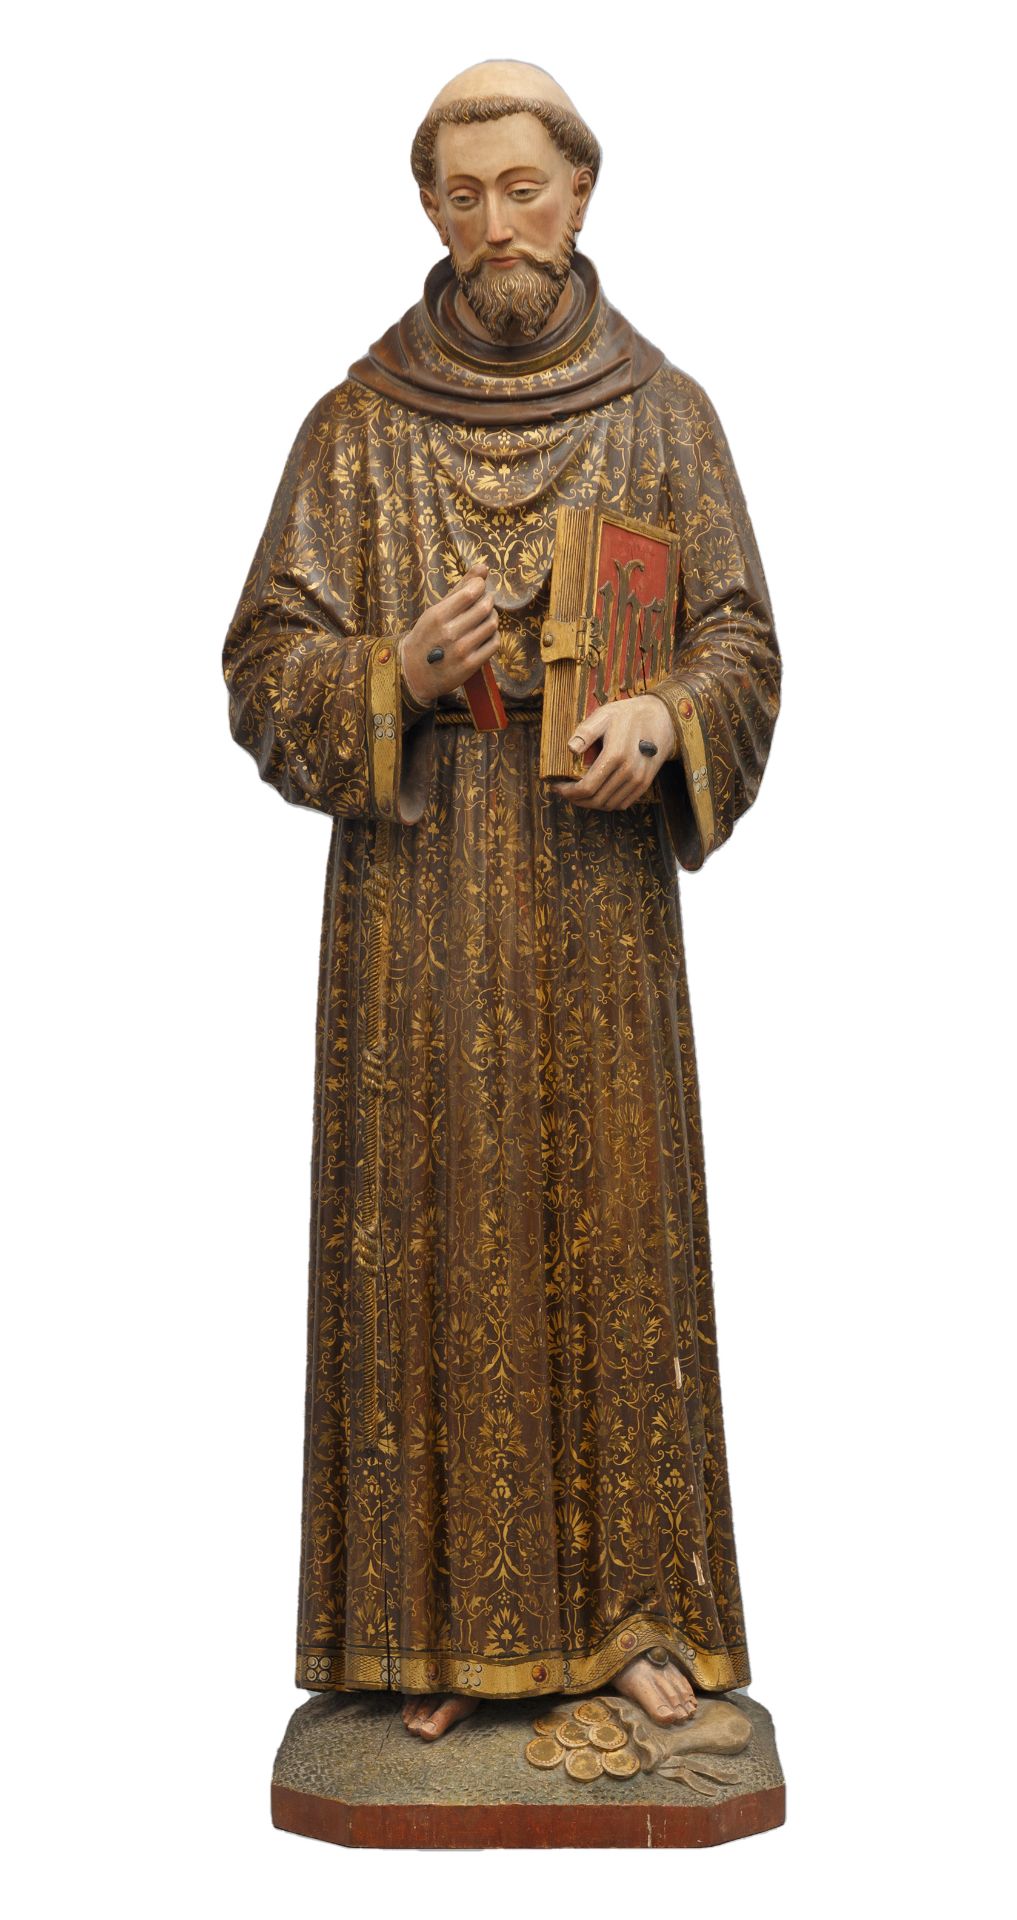 Hl. Franz von Assisi